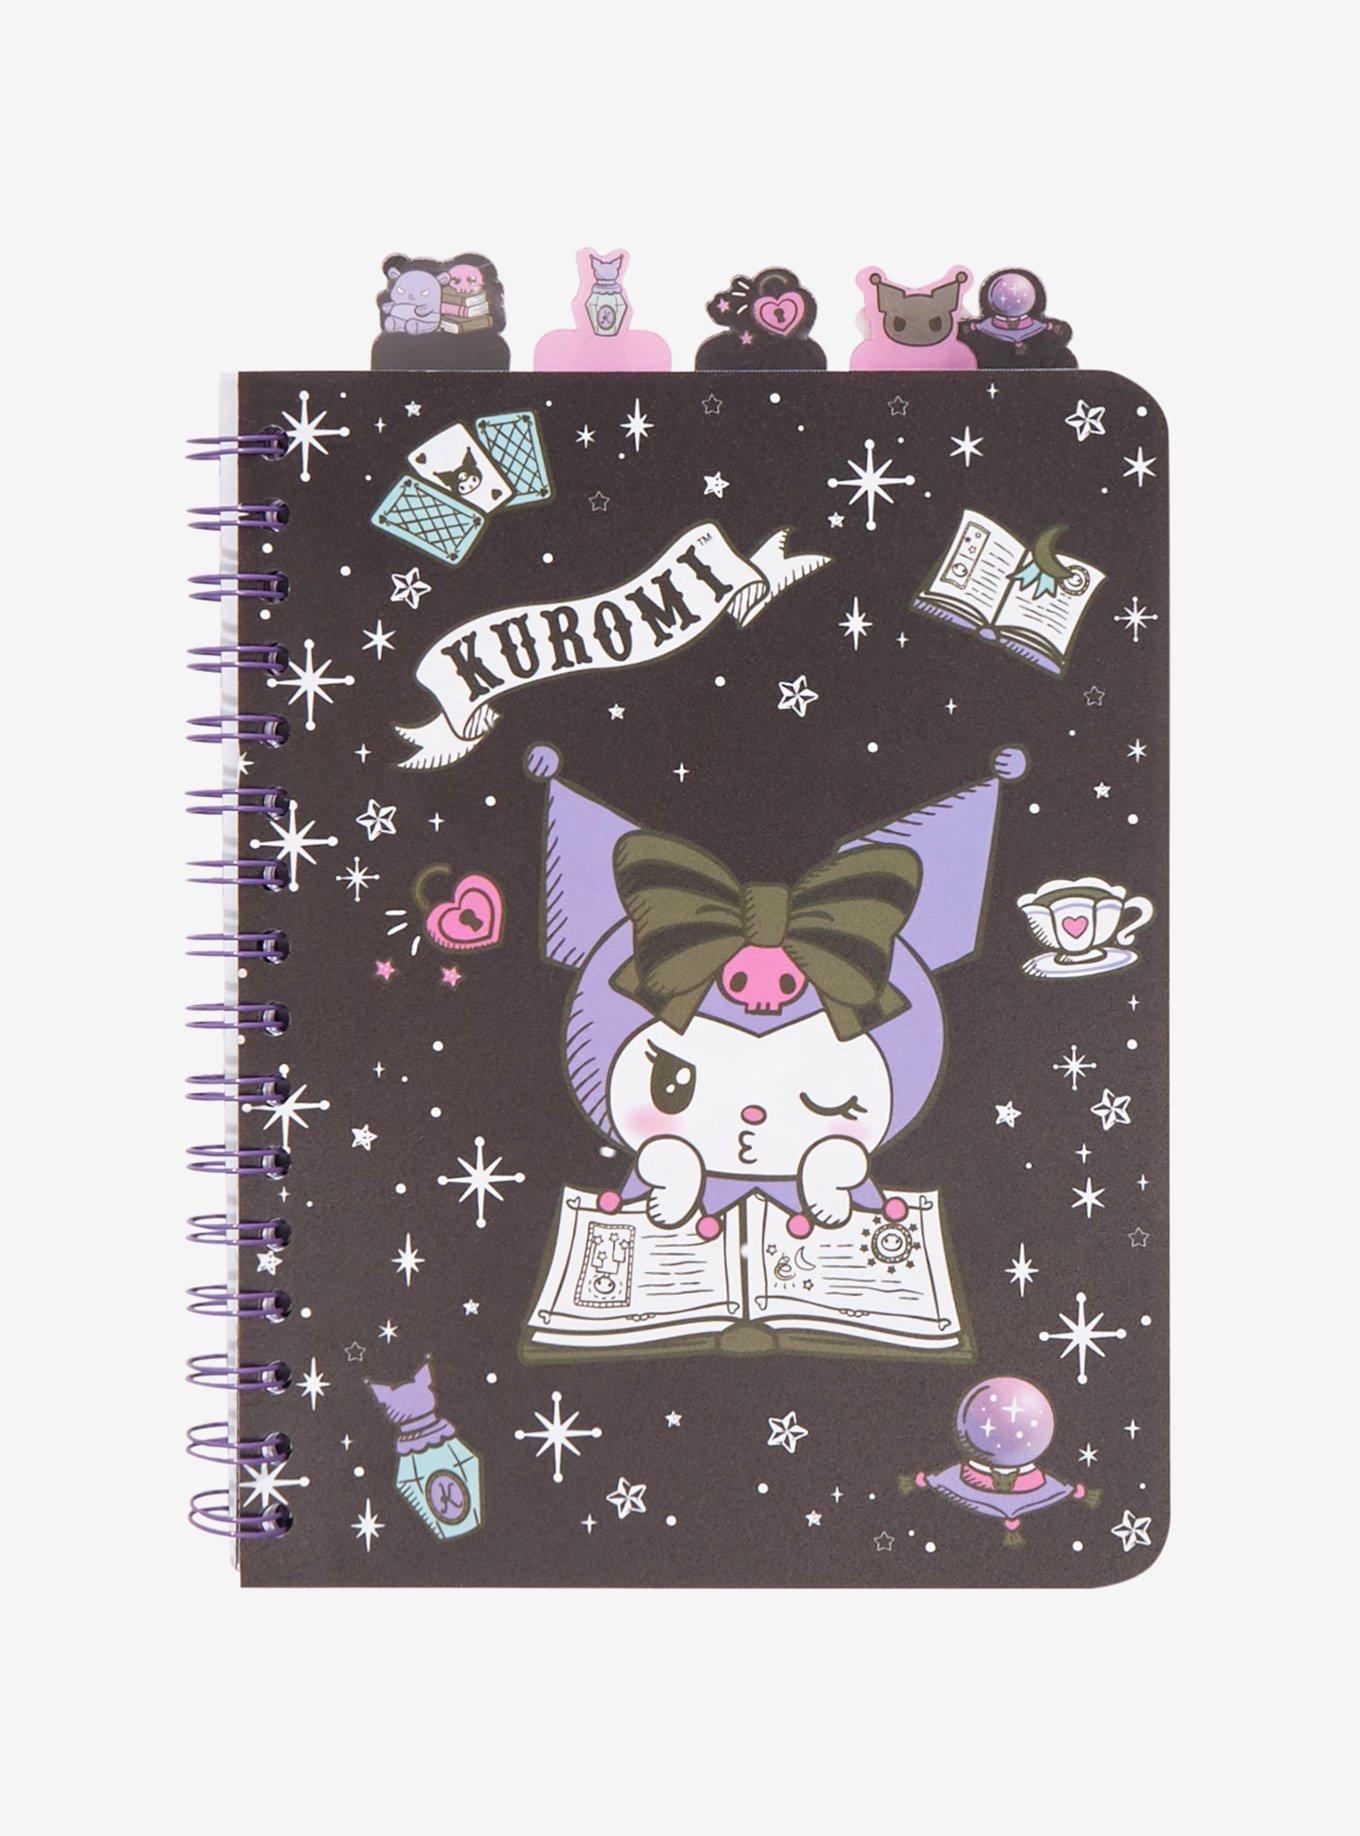 Kuromi Spiral Bound Notebook Journal Diary Gift for Fans Kuromi Neko